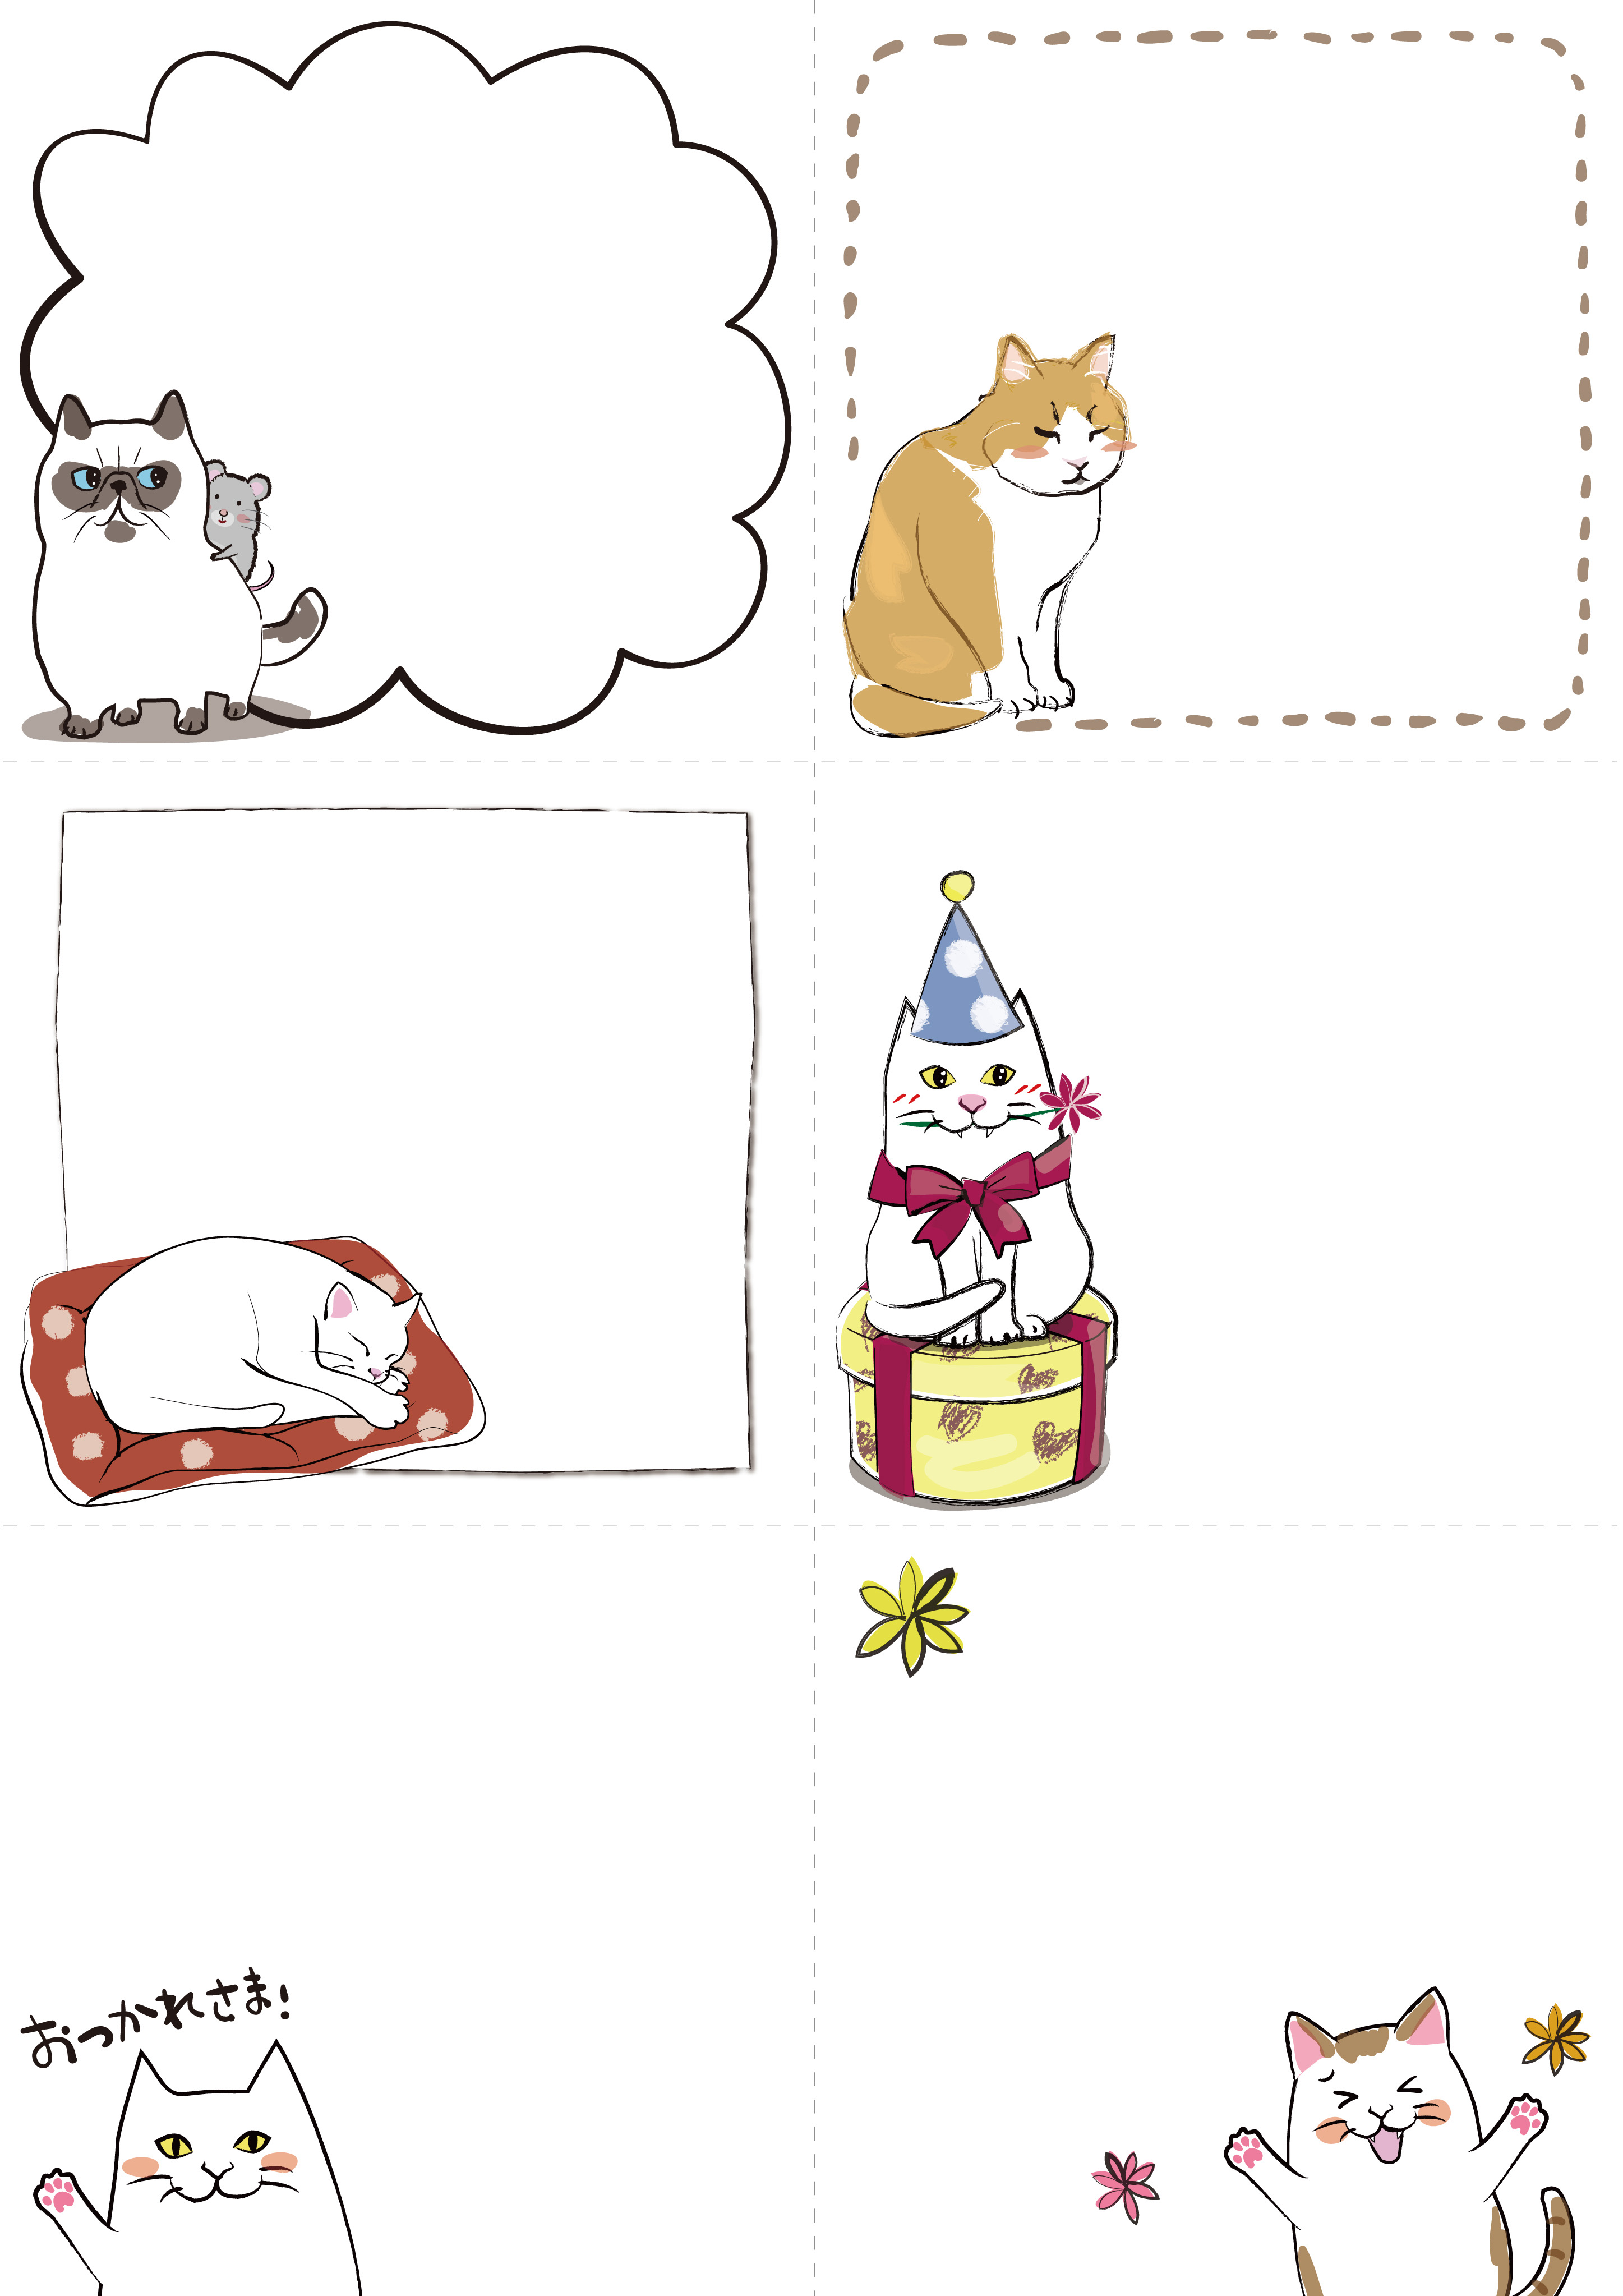 メモ用紙のテンプレート 猫いろいろ サイズ6等分 ダウンロード かわいい無料イラスト 印刷素材 Net